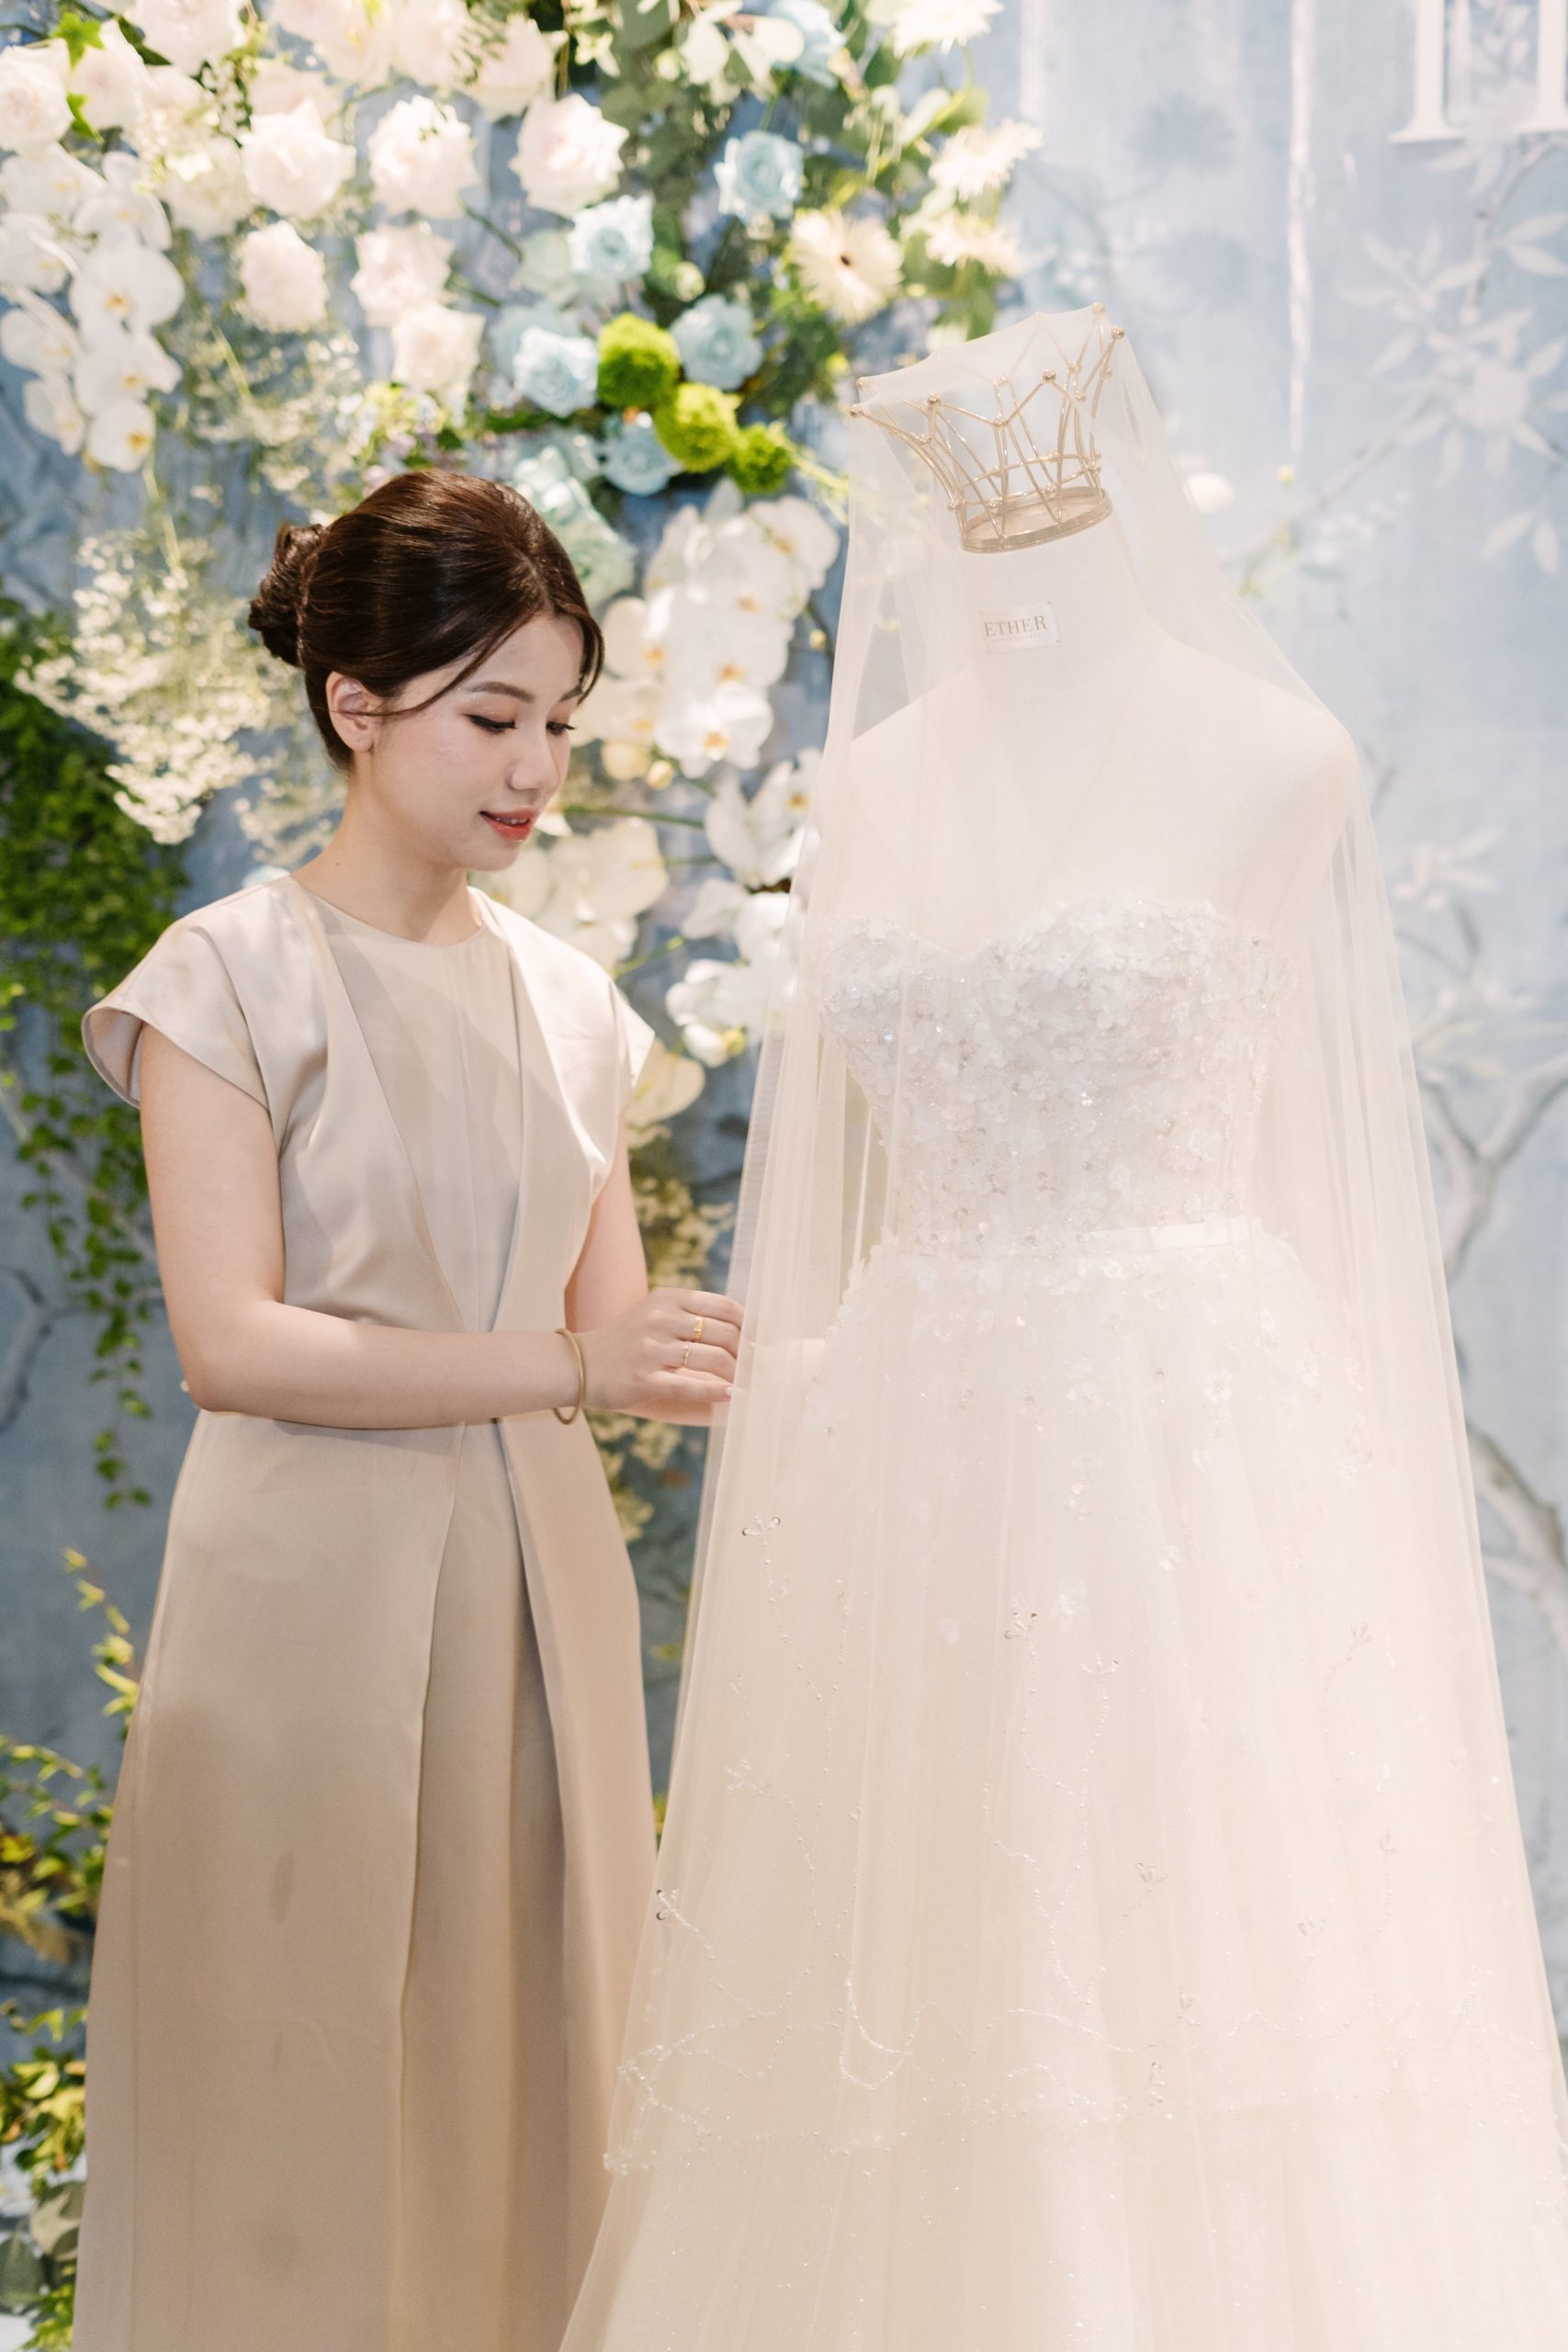 Váy cưới mang phong cách tối giản, thanh lịch phù hợp với từng vóc dáng cơ thể và phong cách cá nhân của cô dâu